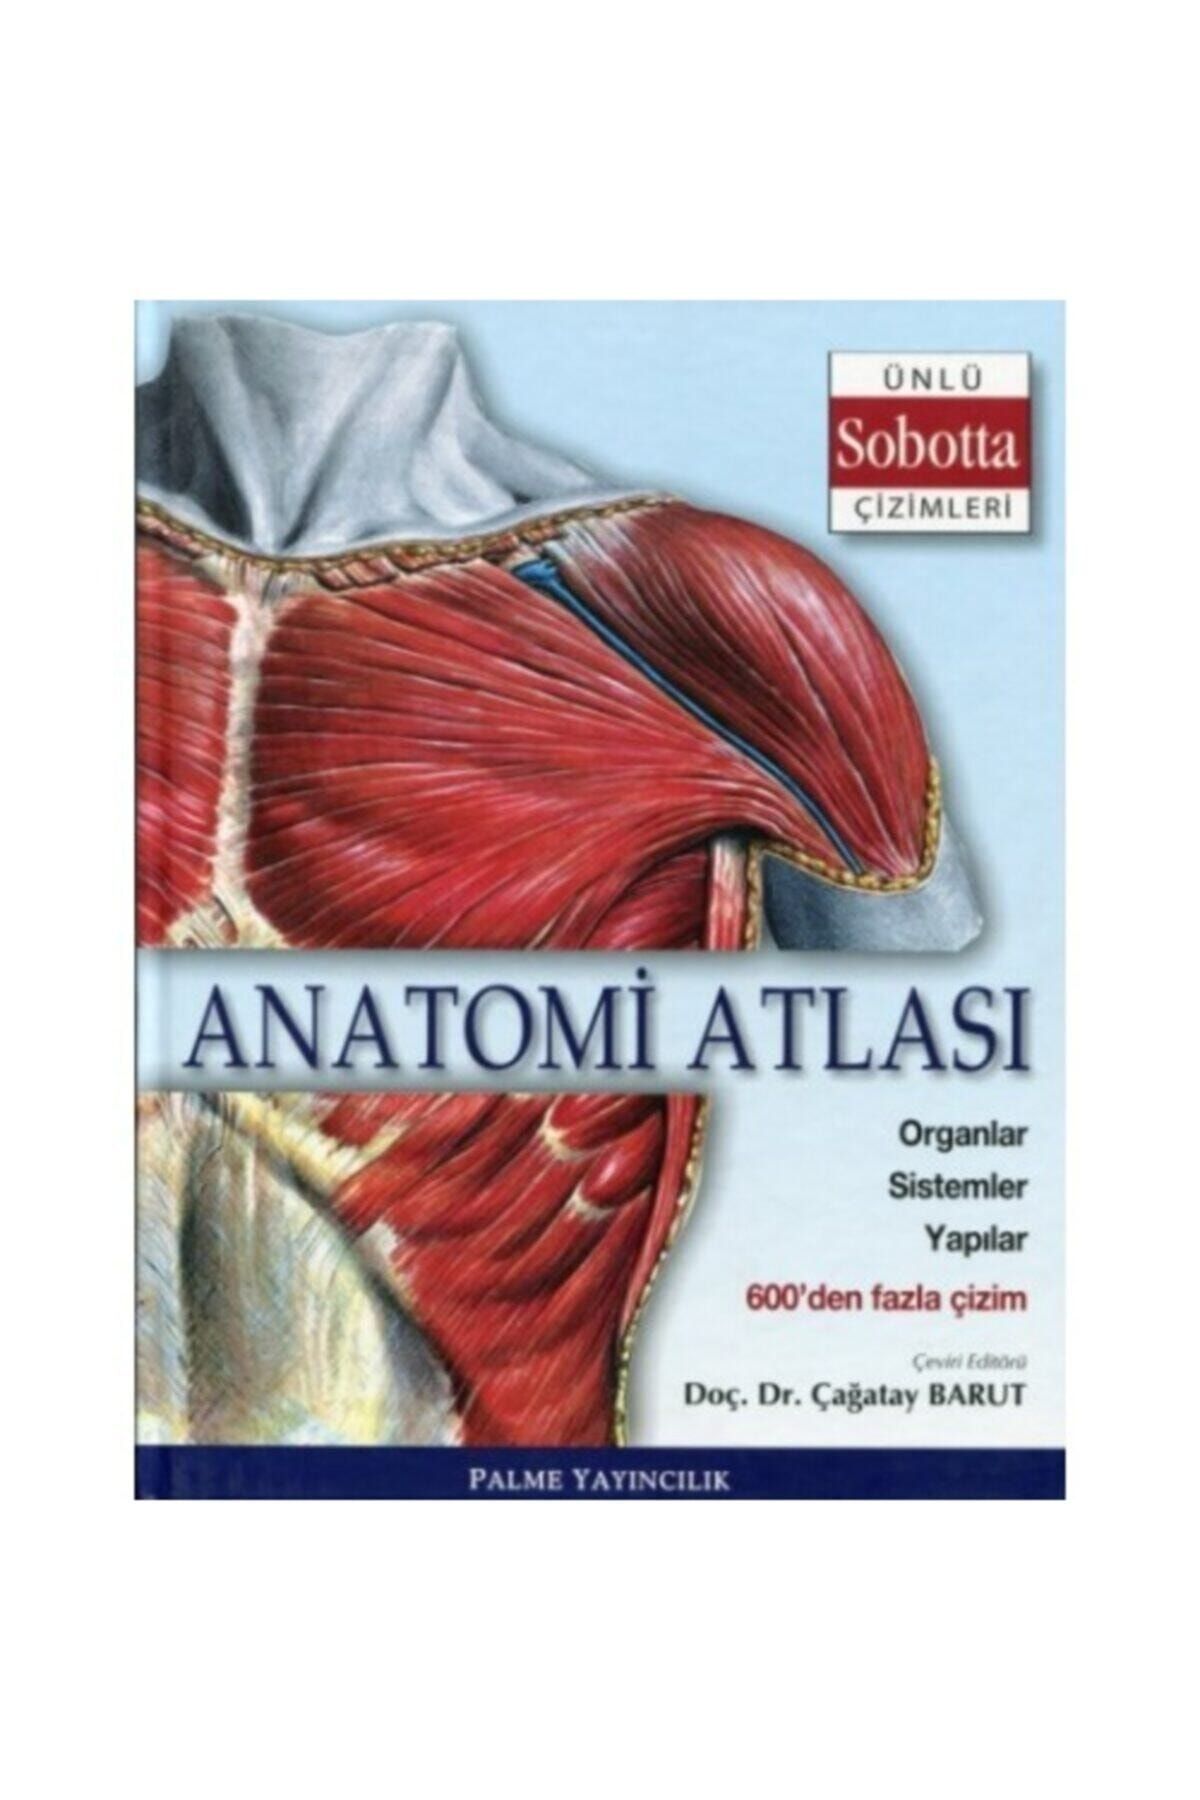 Palme Yayınevi Anatomi Atlası Ünlü Sobotta Çizimleri A19/69